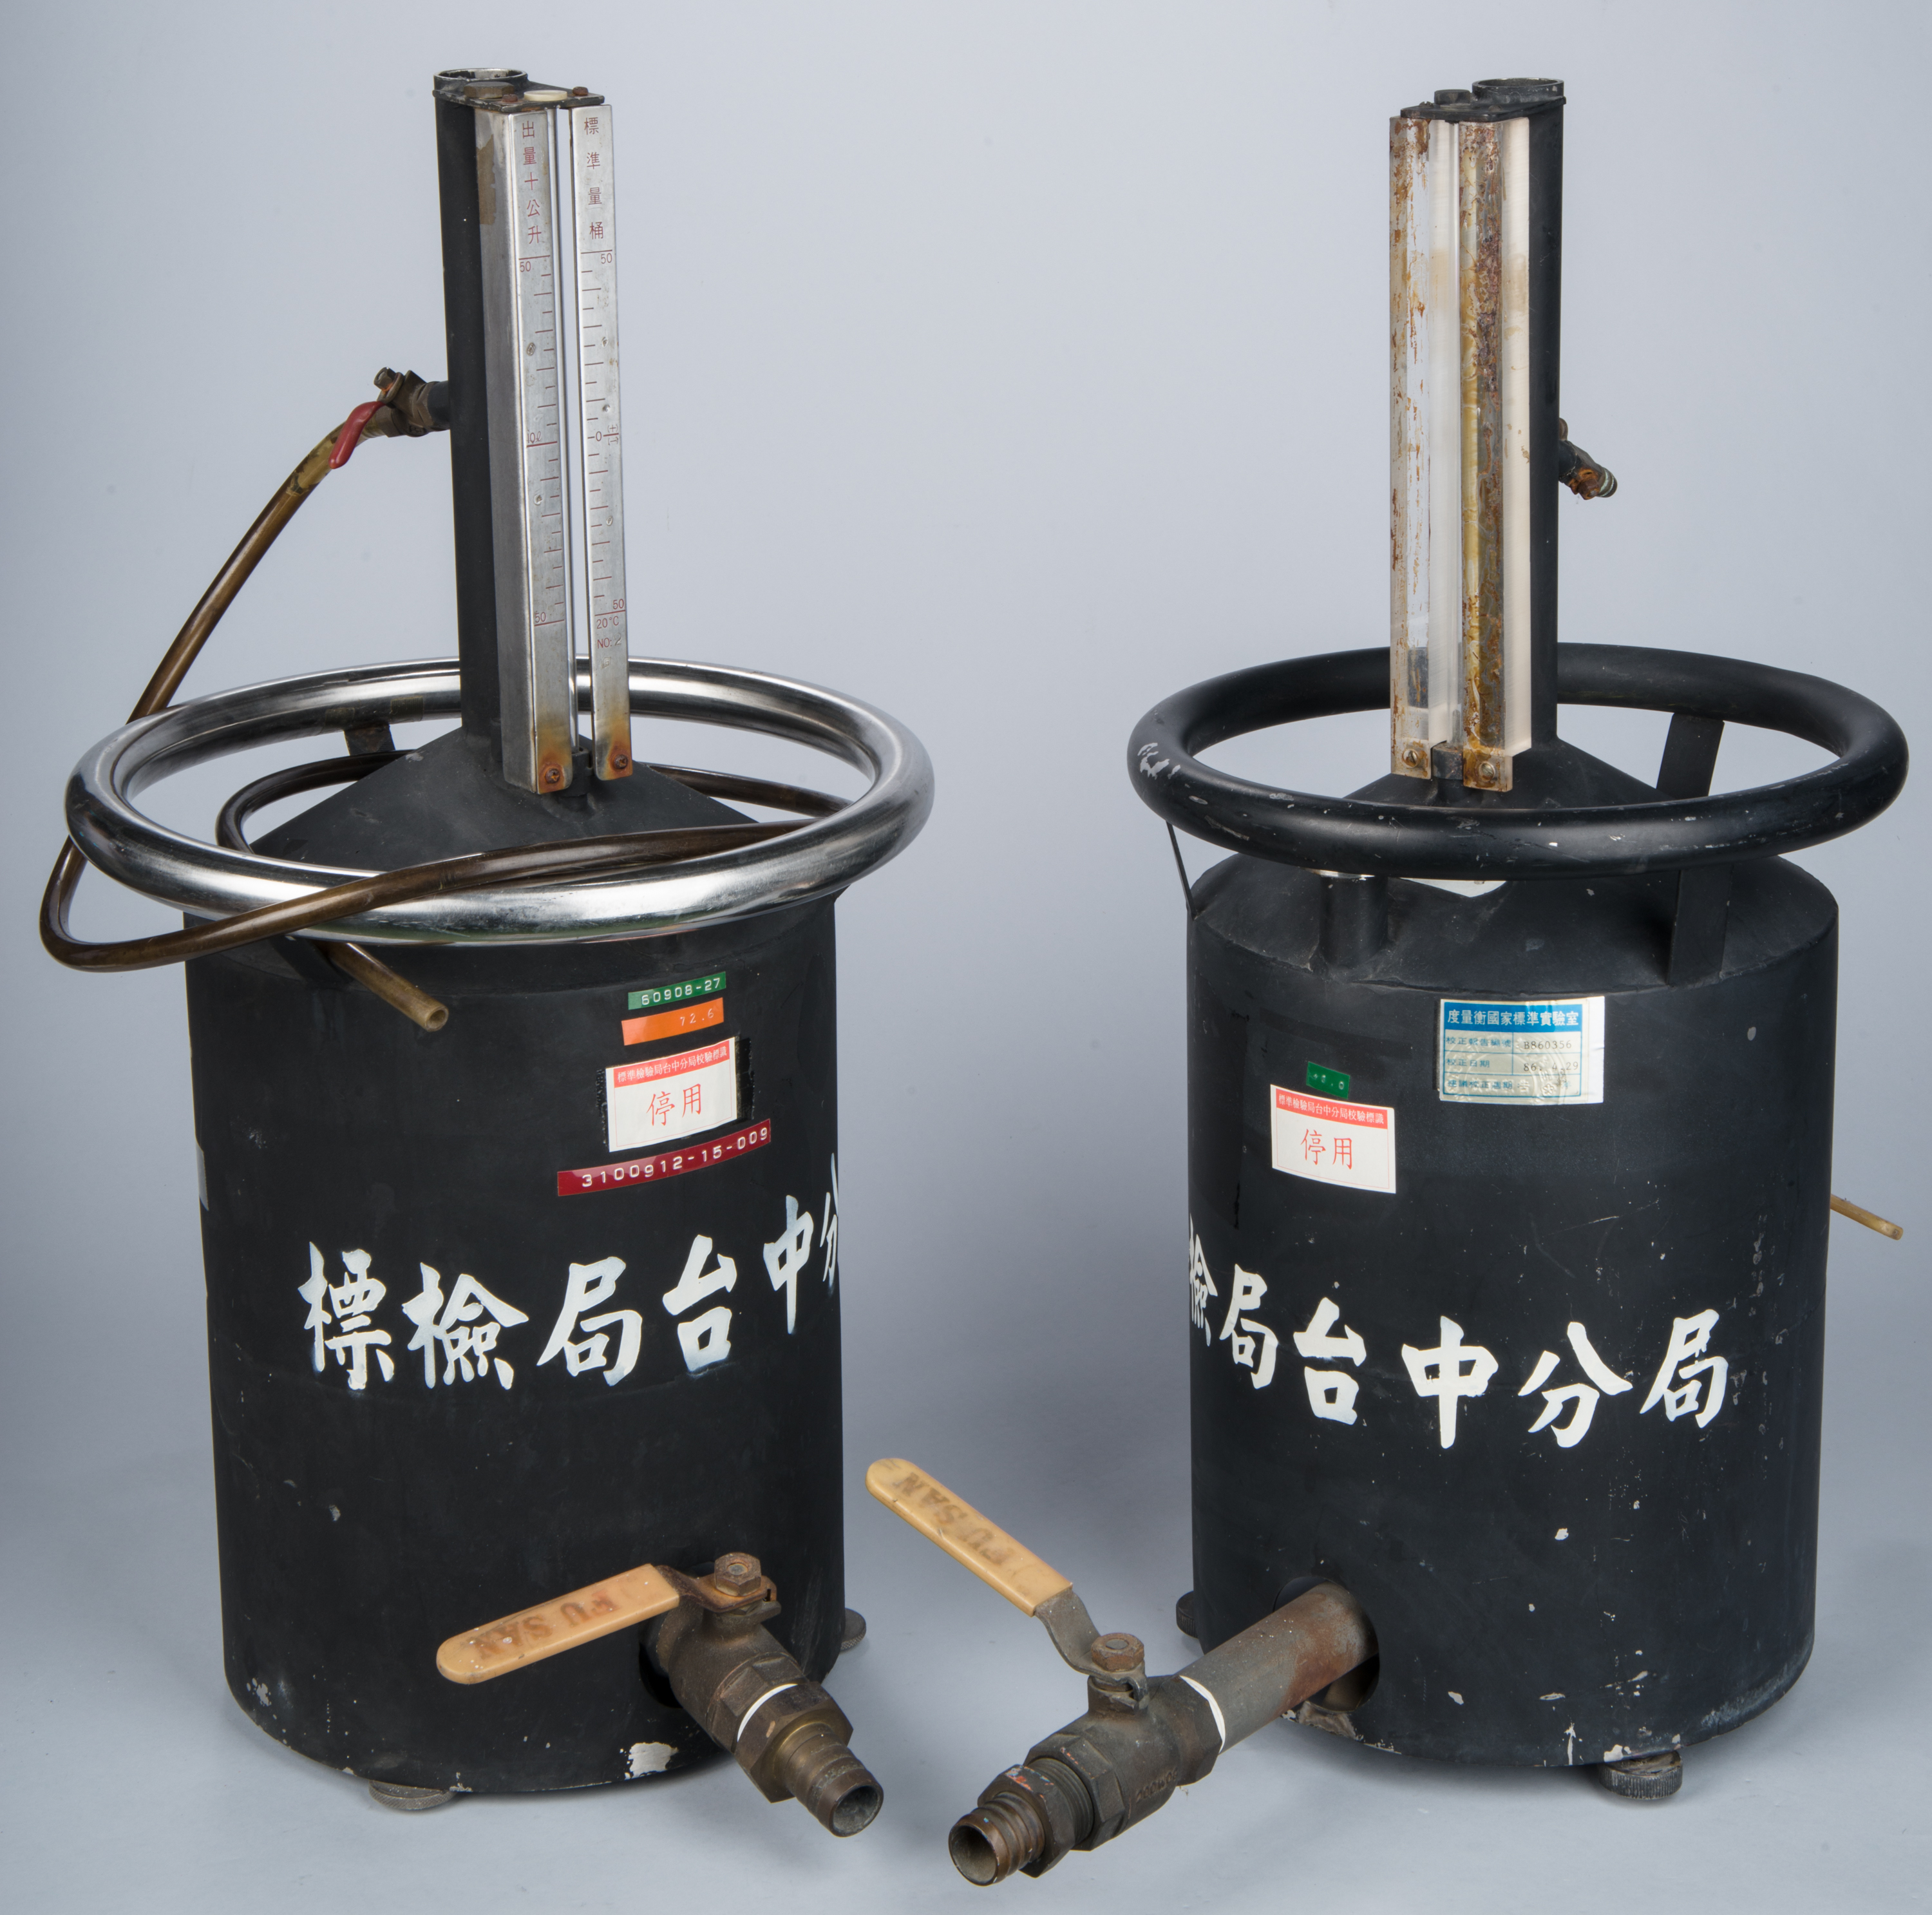 標準量桶（10公升  舊式）,共3張圖片